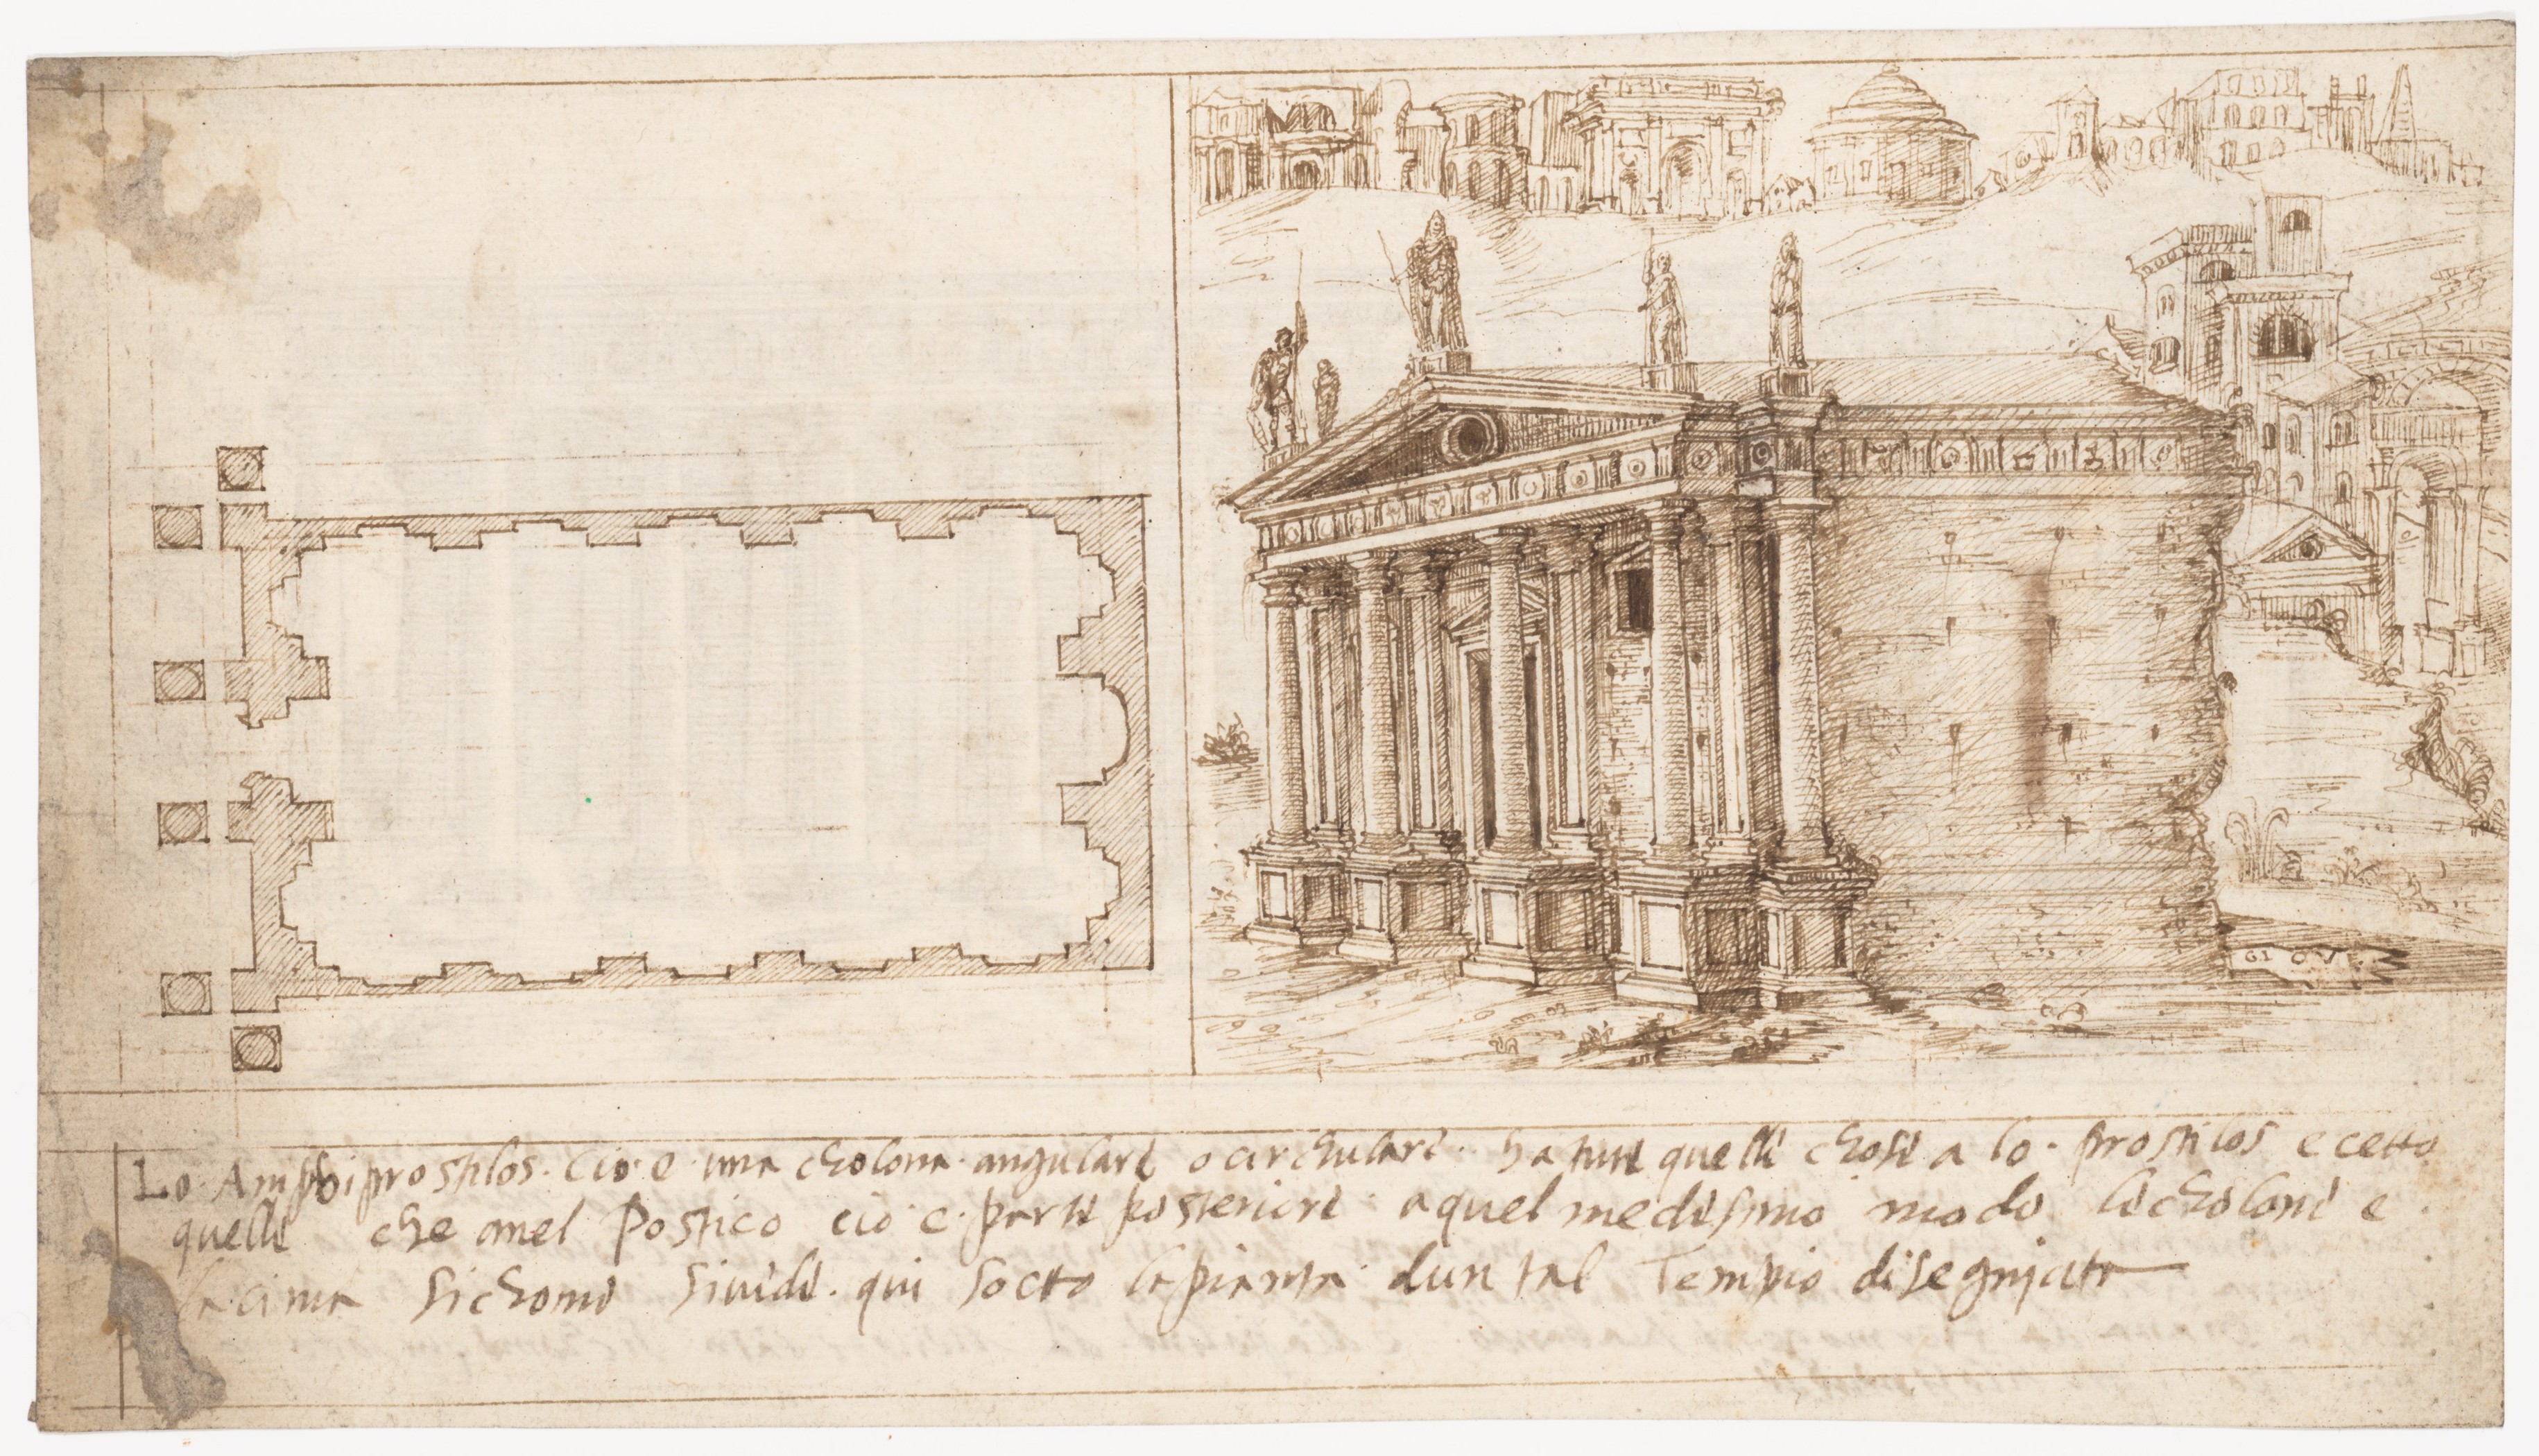 右页是罗马建筑结构图。